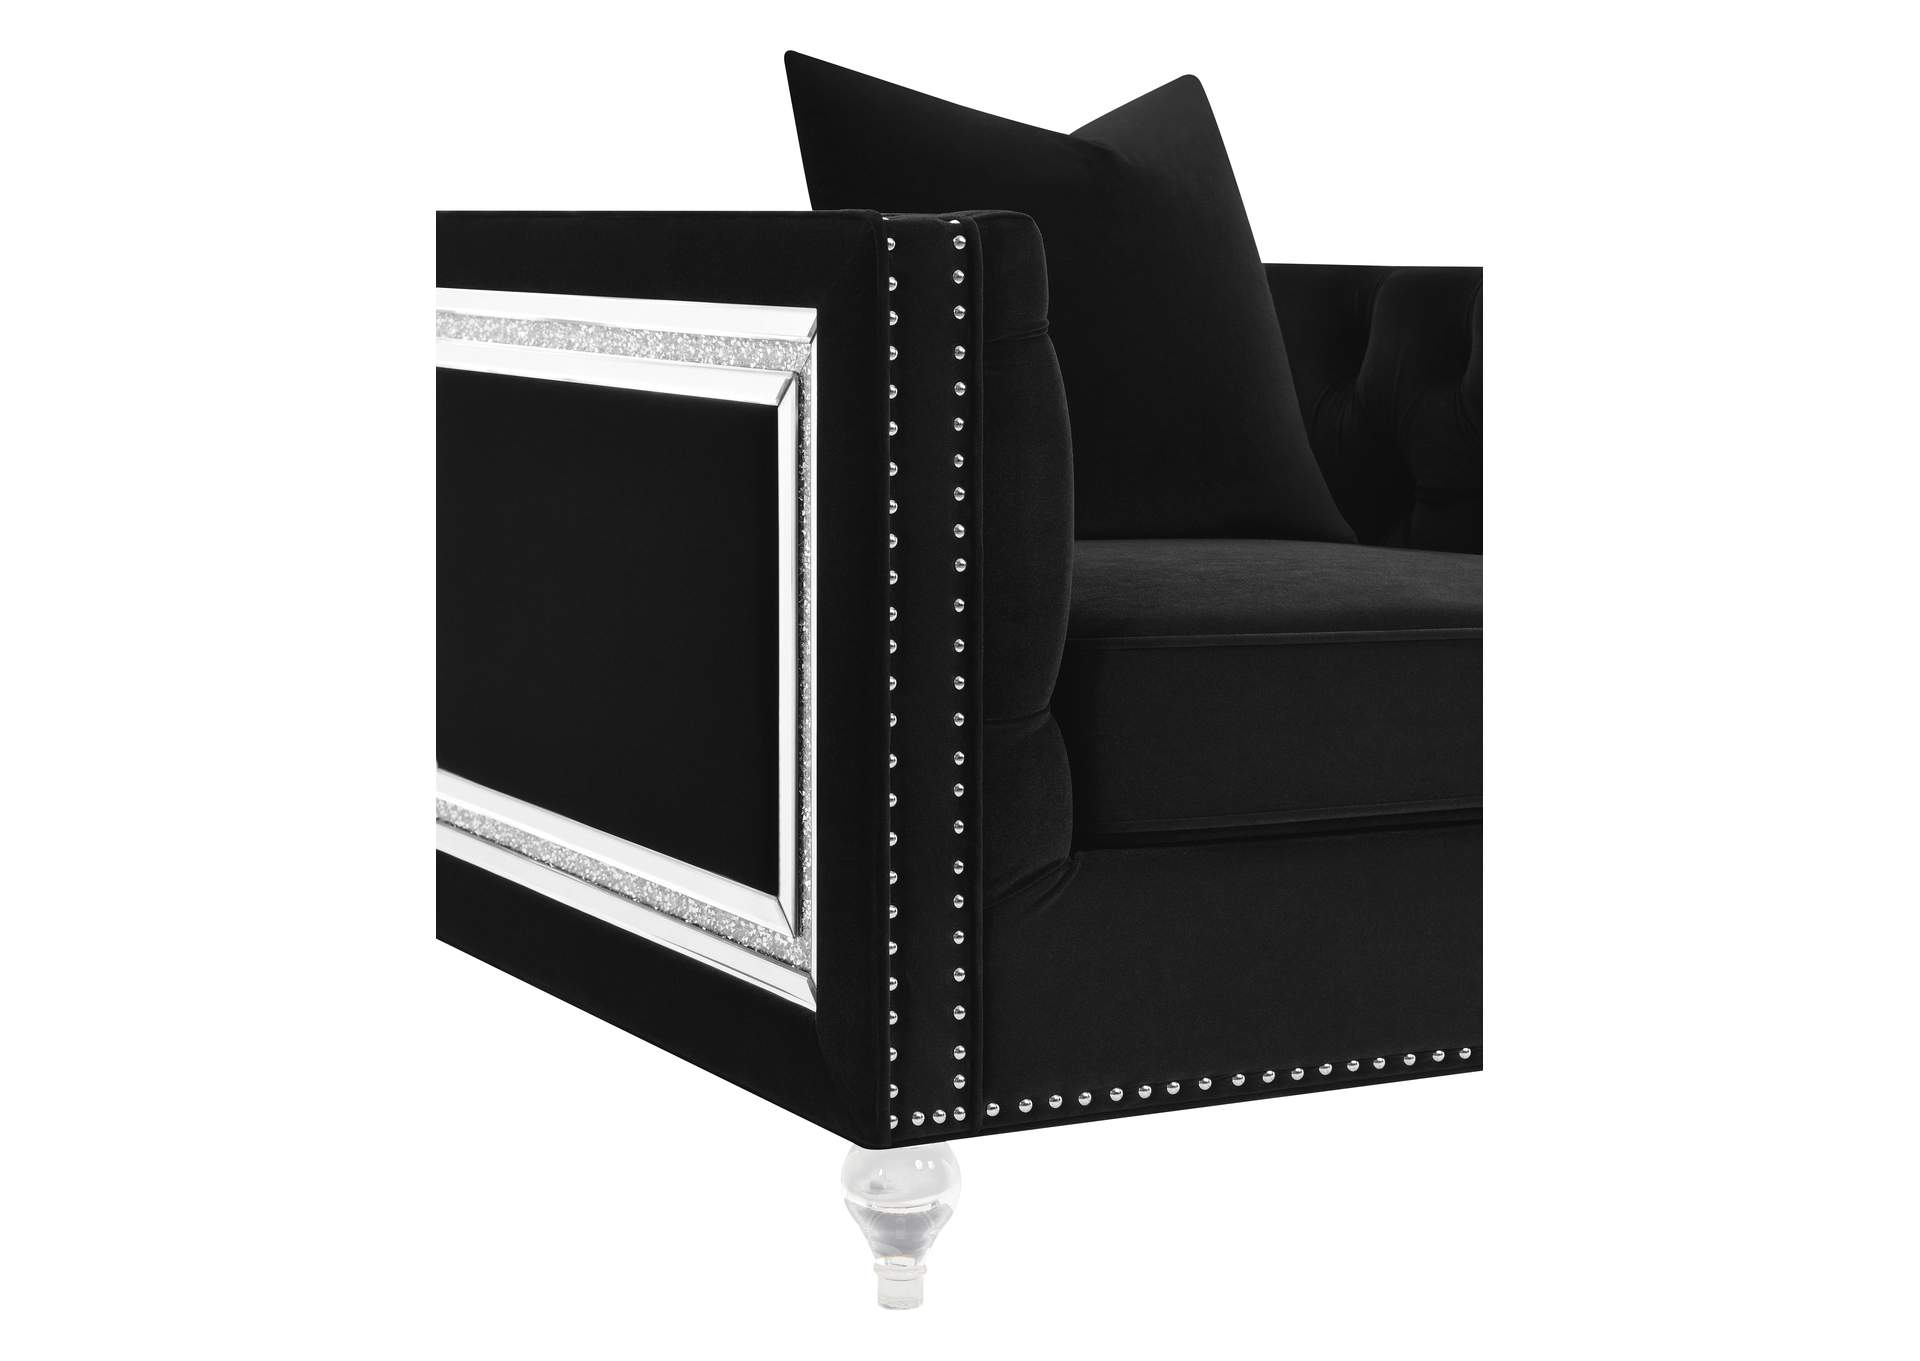 Delilah Upholstered Living Room Set Black,Coaster Furniture